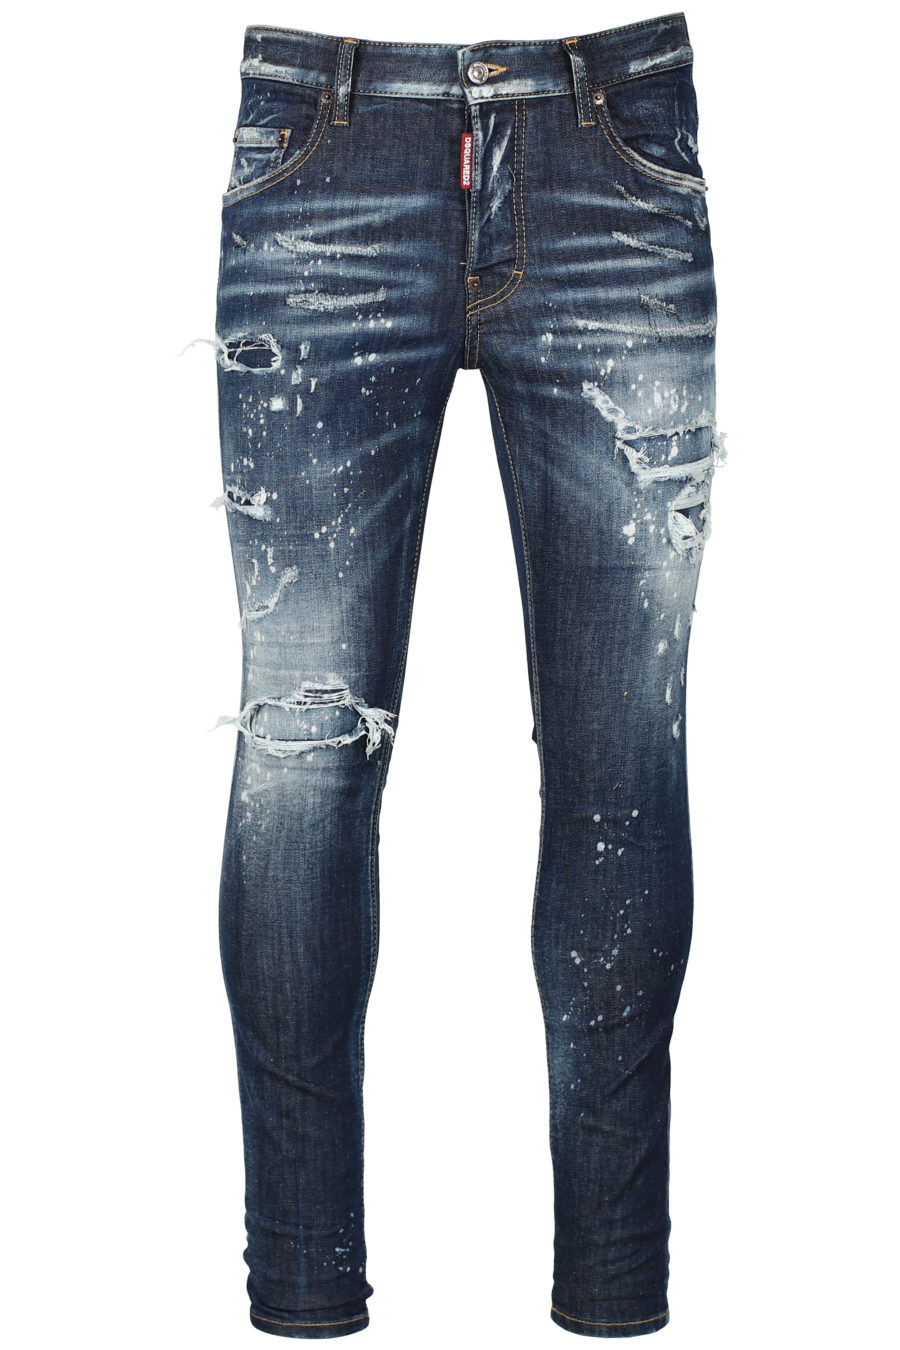 Pantalón vaquero "Super twinky jean" de color azul oscuro - IMG 2638